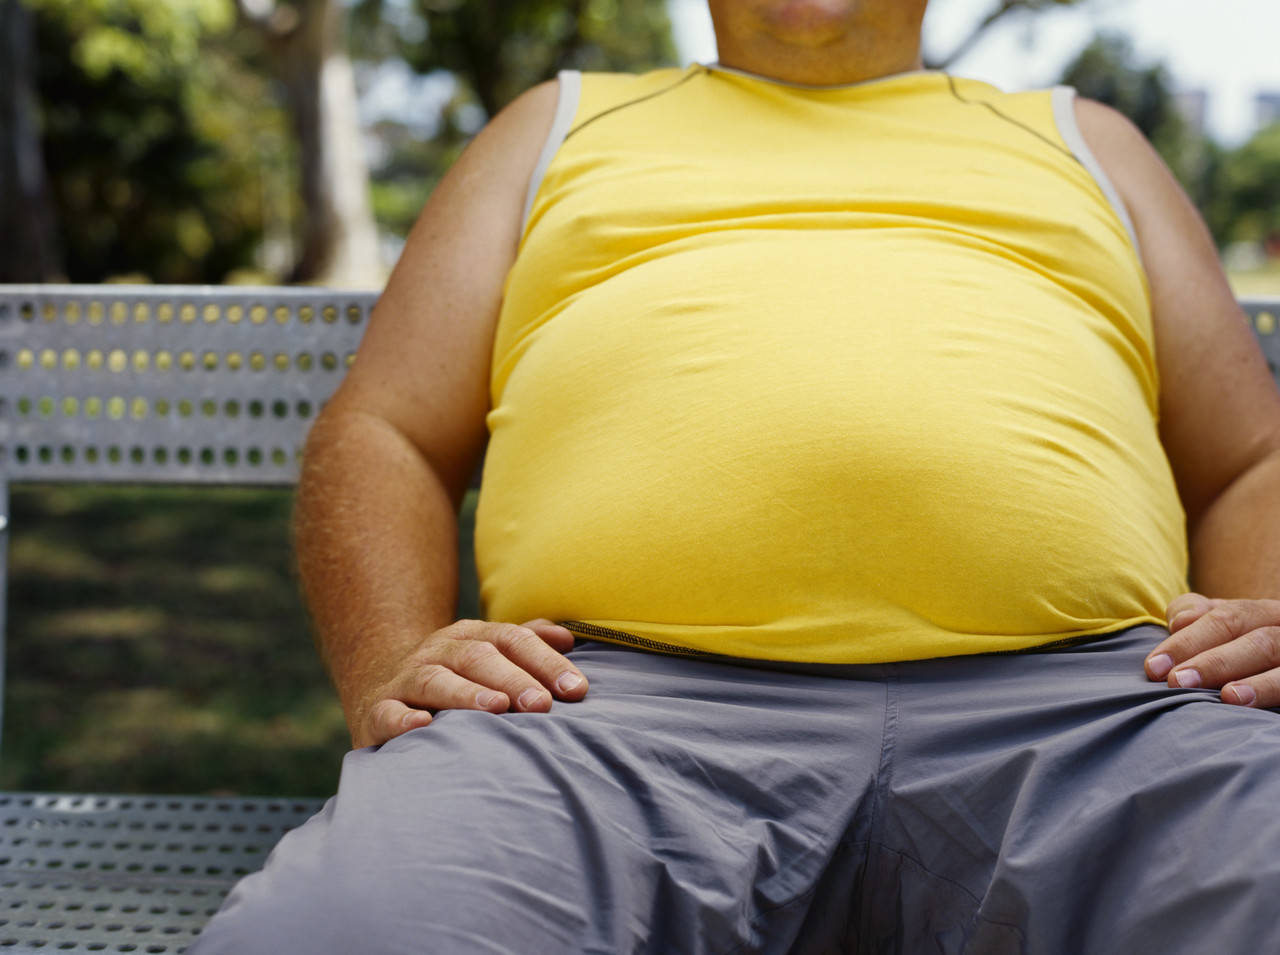 Πώς η παχυσαρκία επηρεάζει την παραγωγικότητα